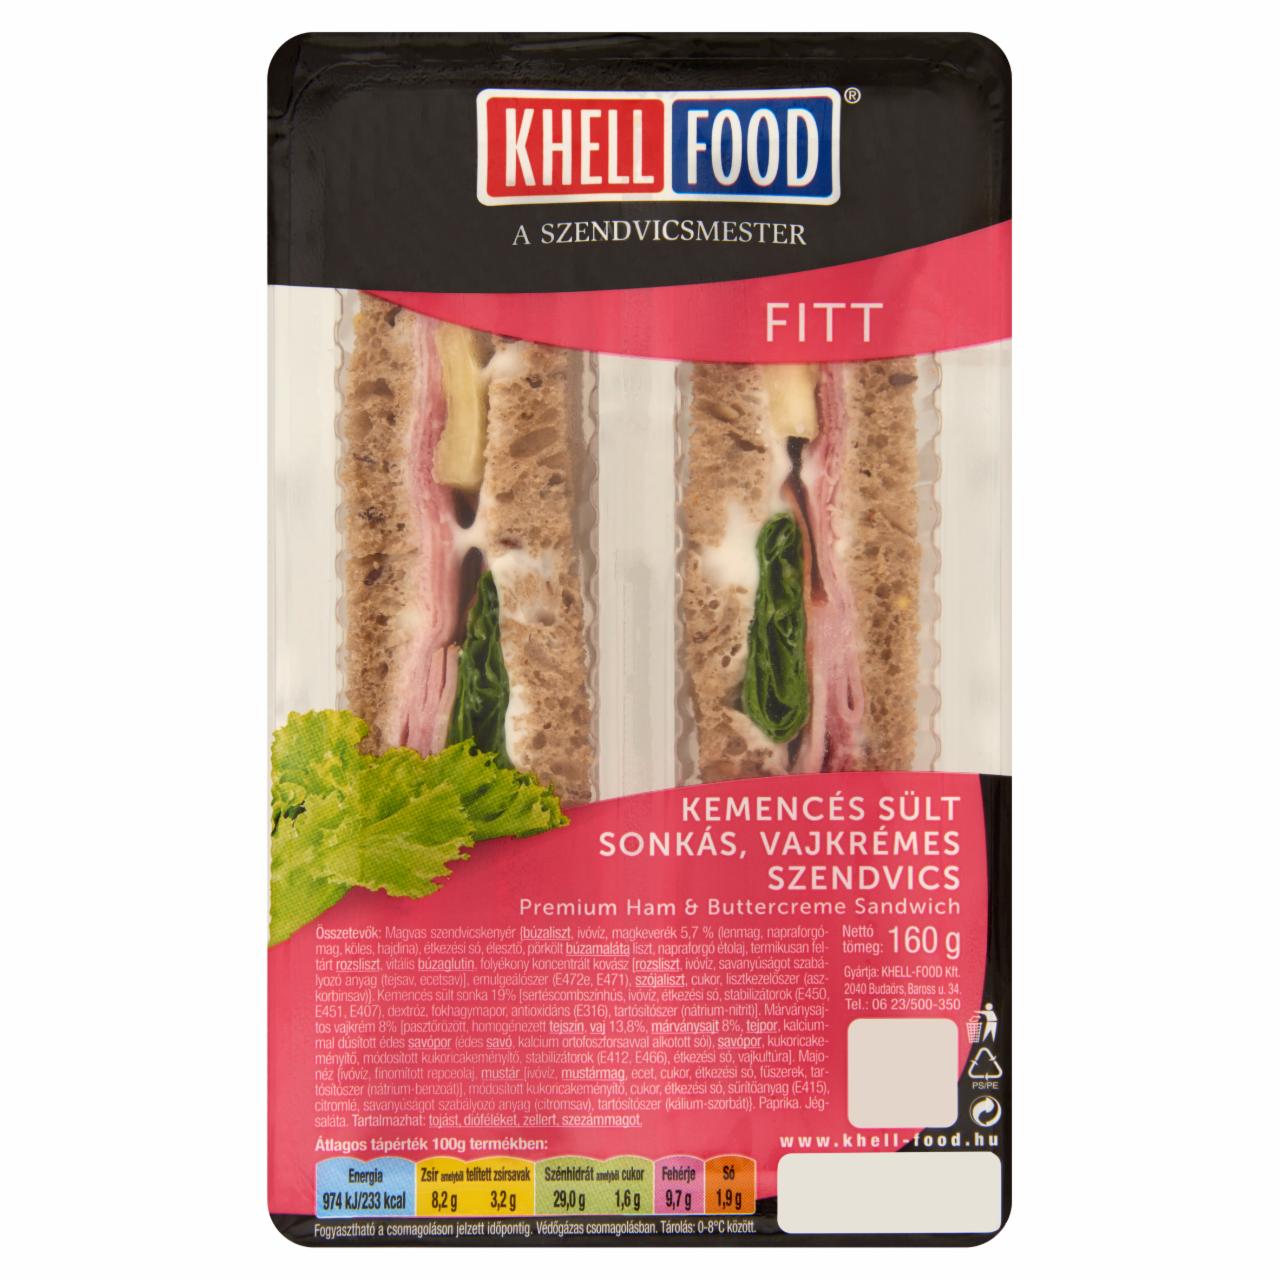 Képek - Khell-Food Fitt kemencés sült sonkás, vajkrémes szendvics 160 g